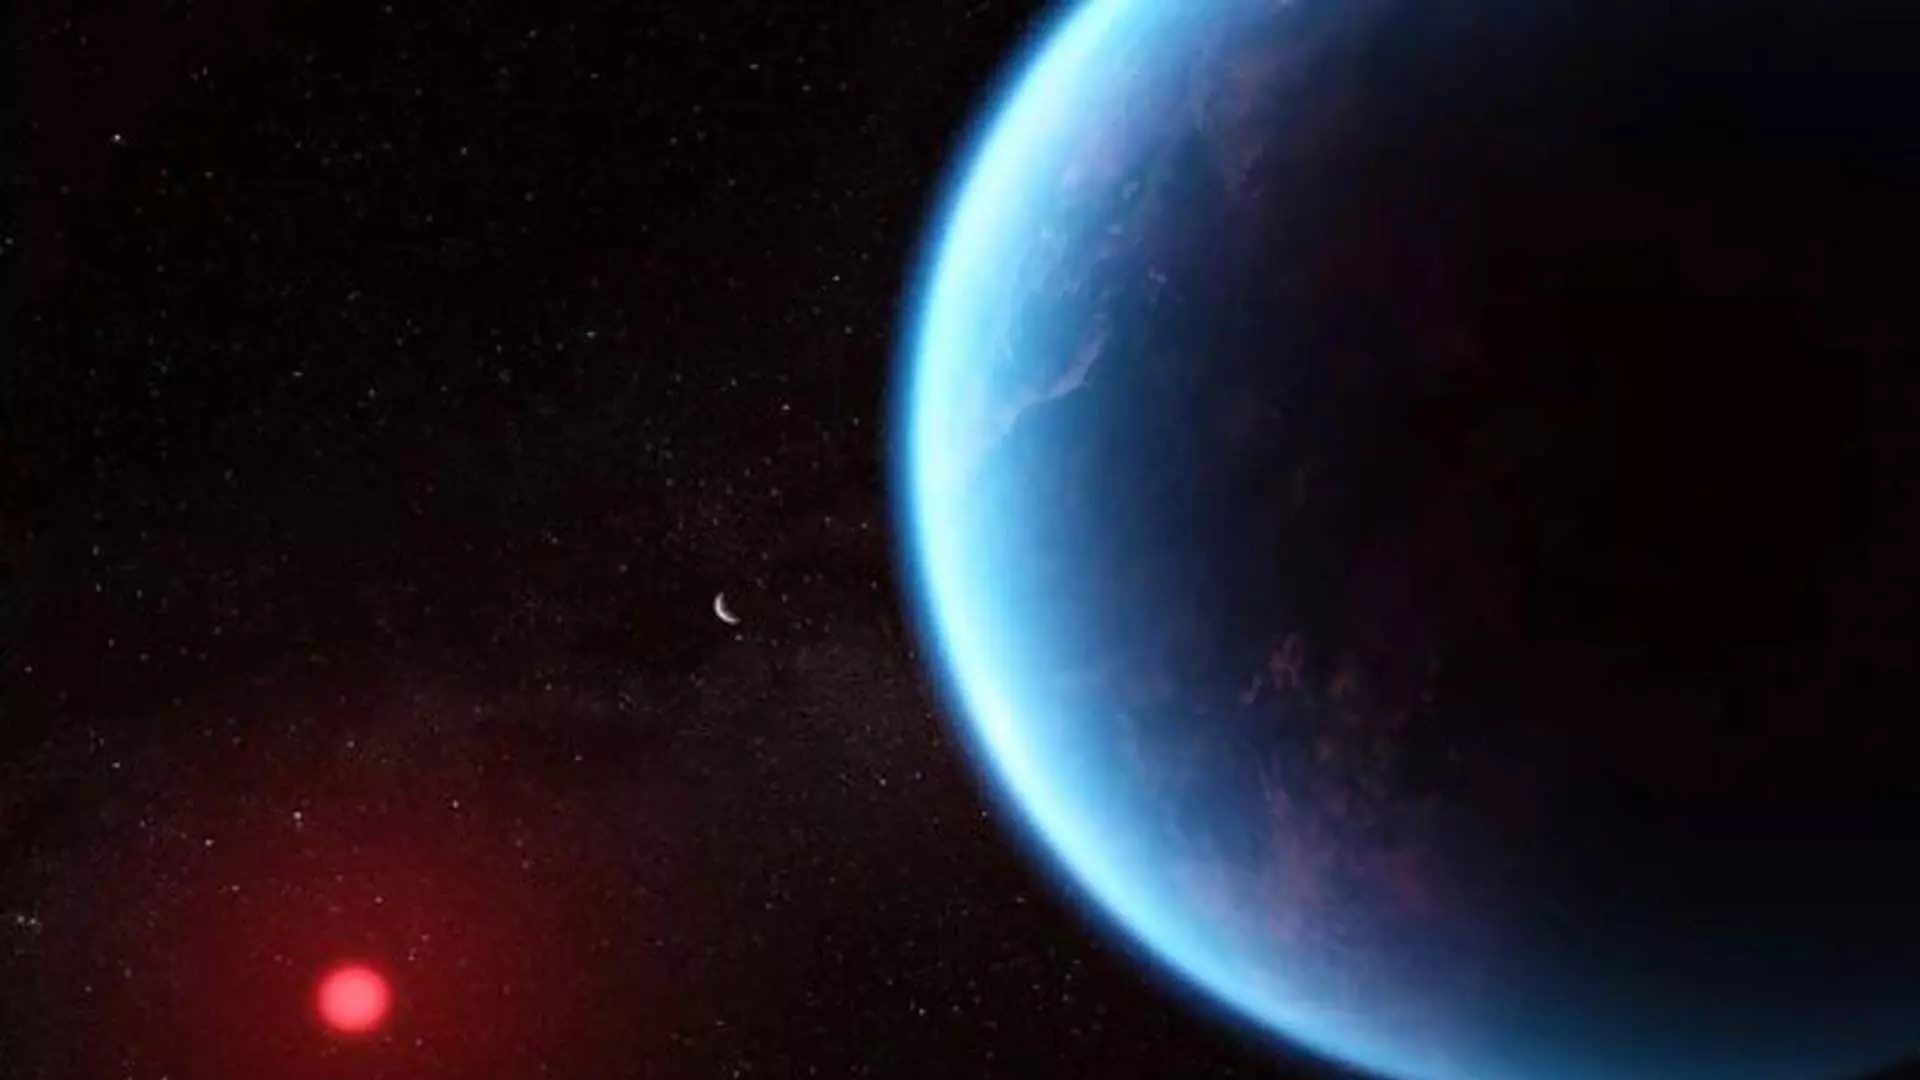 ग्रह K2-18b, विदेशी जीवन के लिए जांच की जा रही सुपर अर्थ के बारे में 5 तथ्य